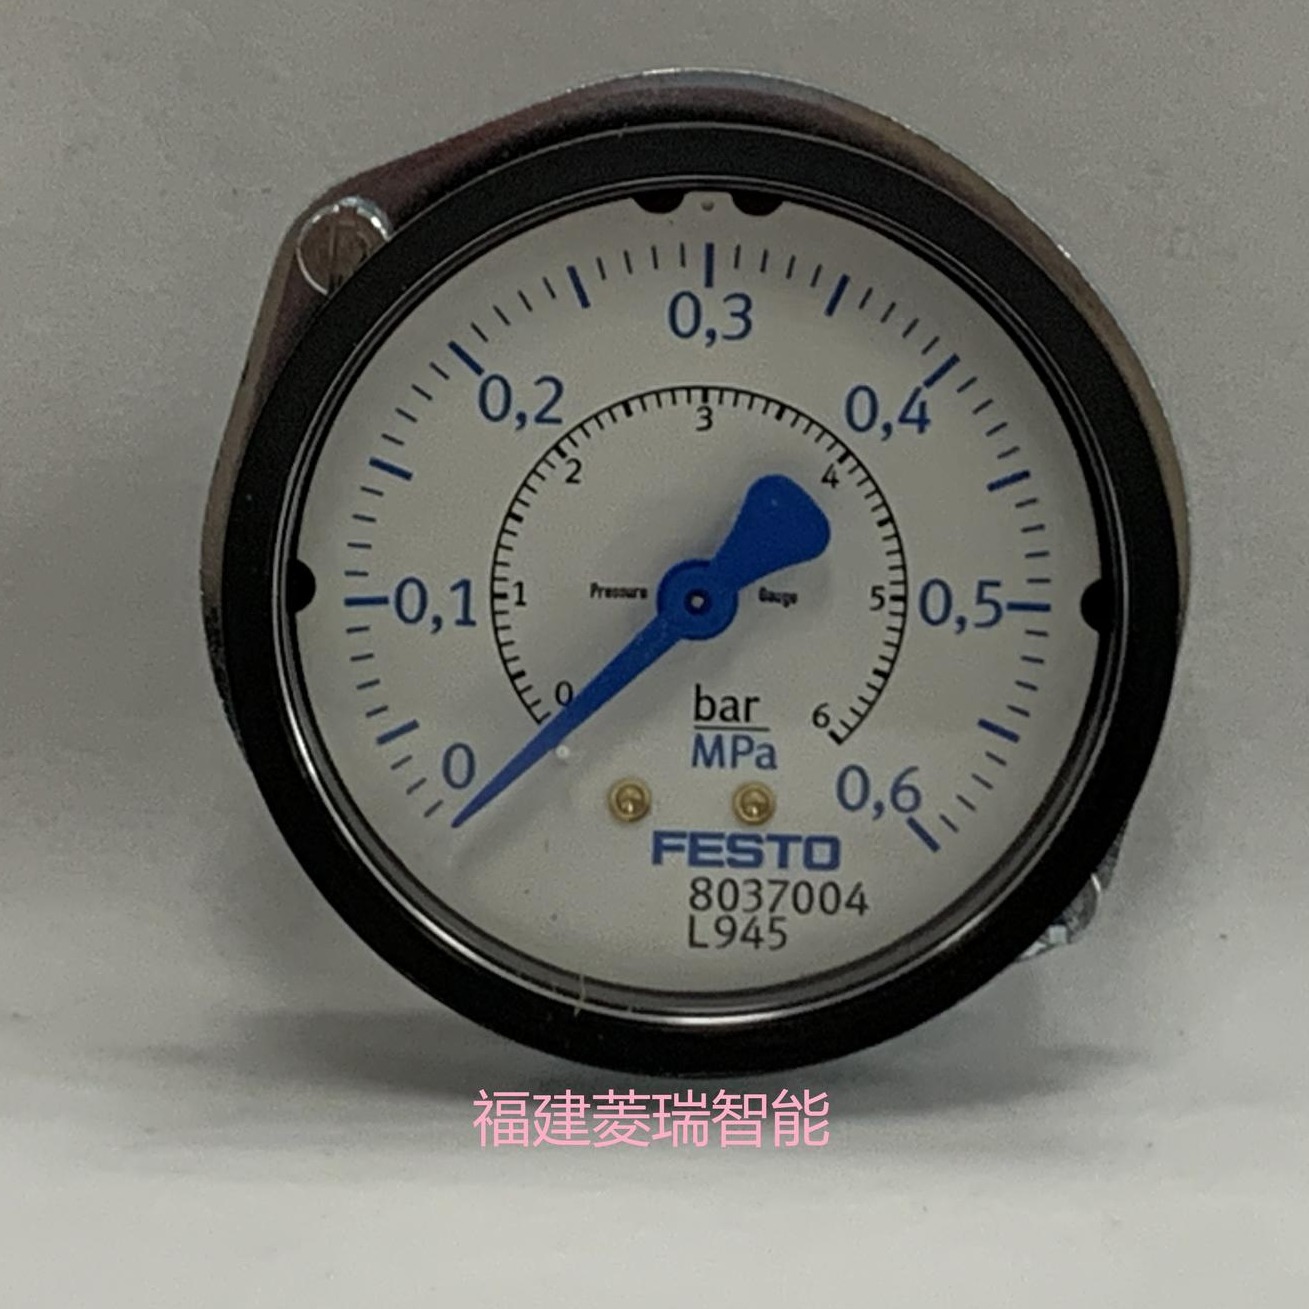 菱瑞FESTO费斯托 压力表组件DPA-63-10-MA-SET压力表 全新原装